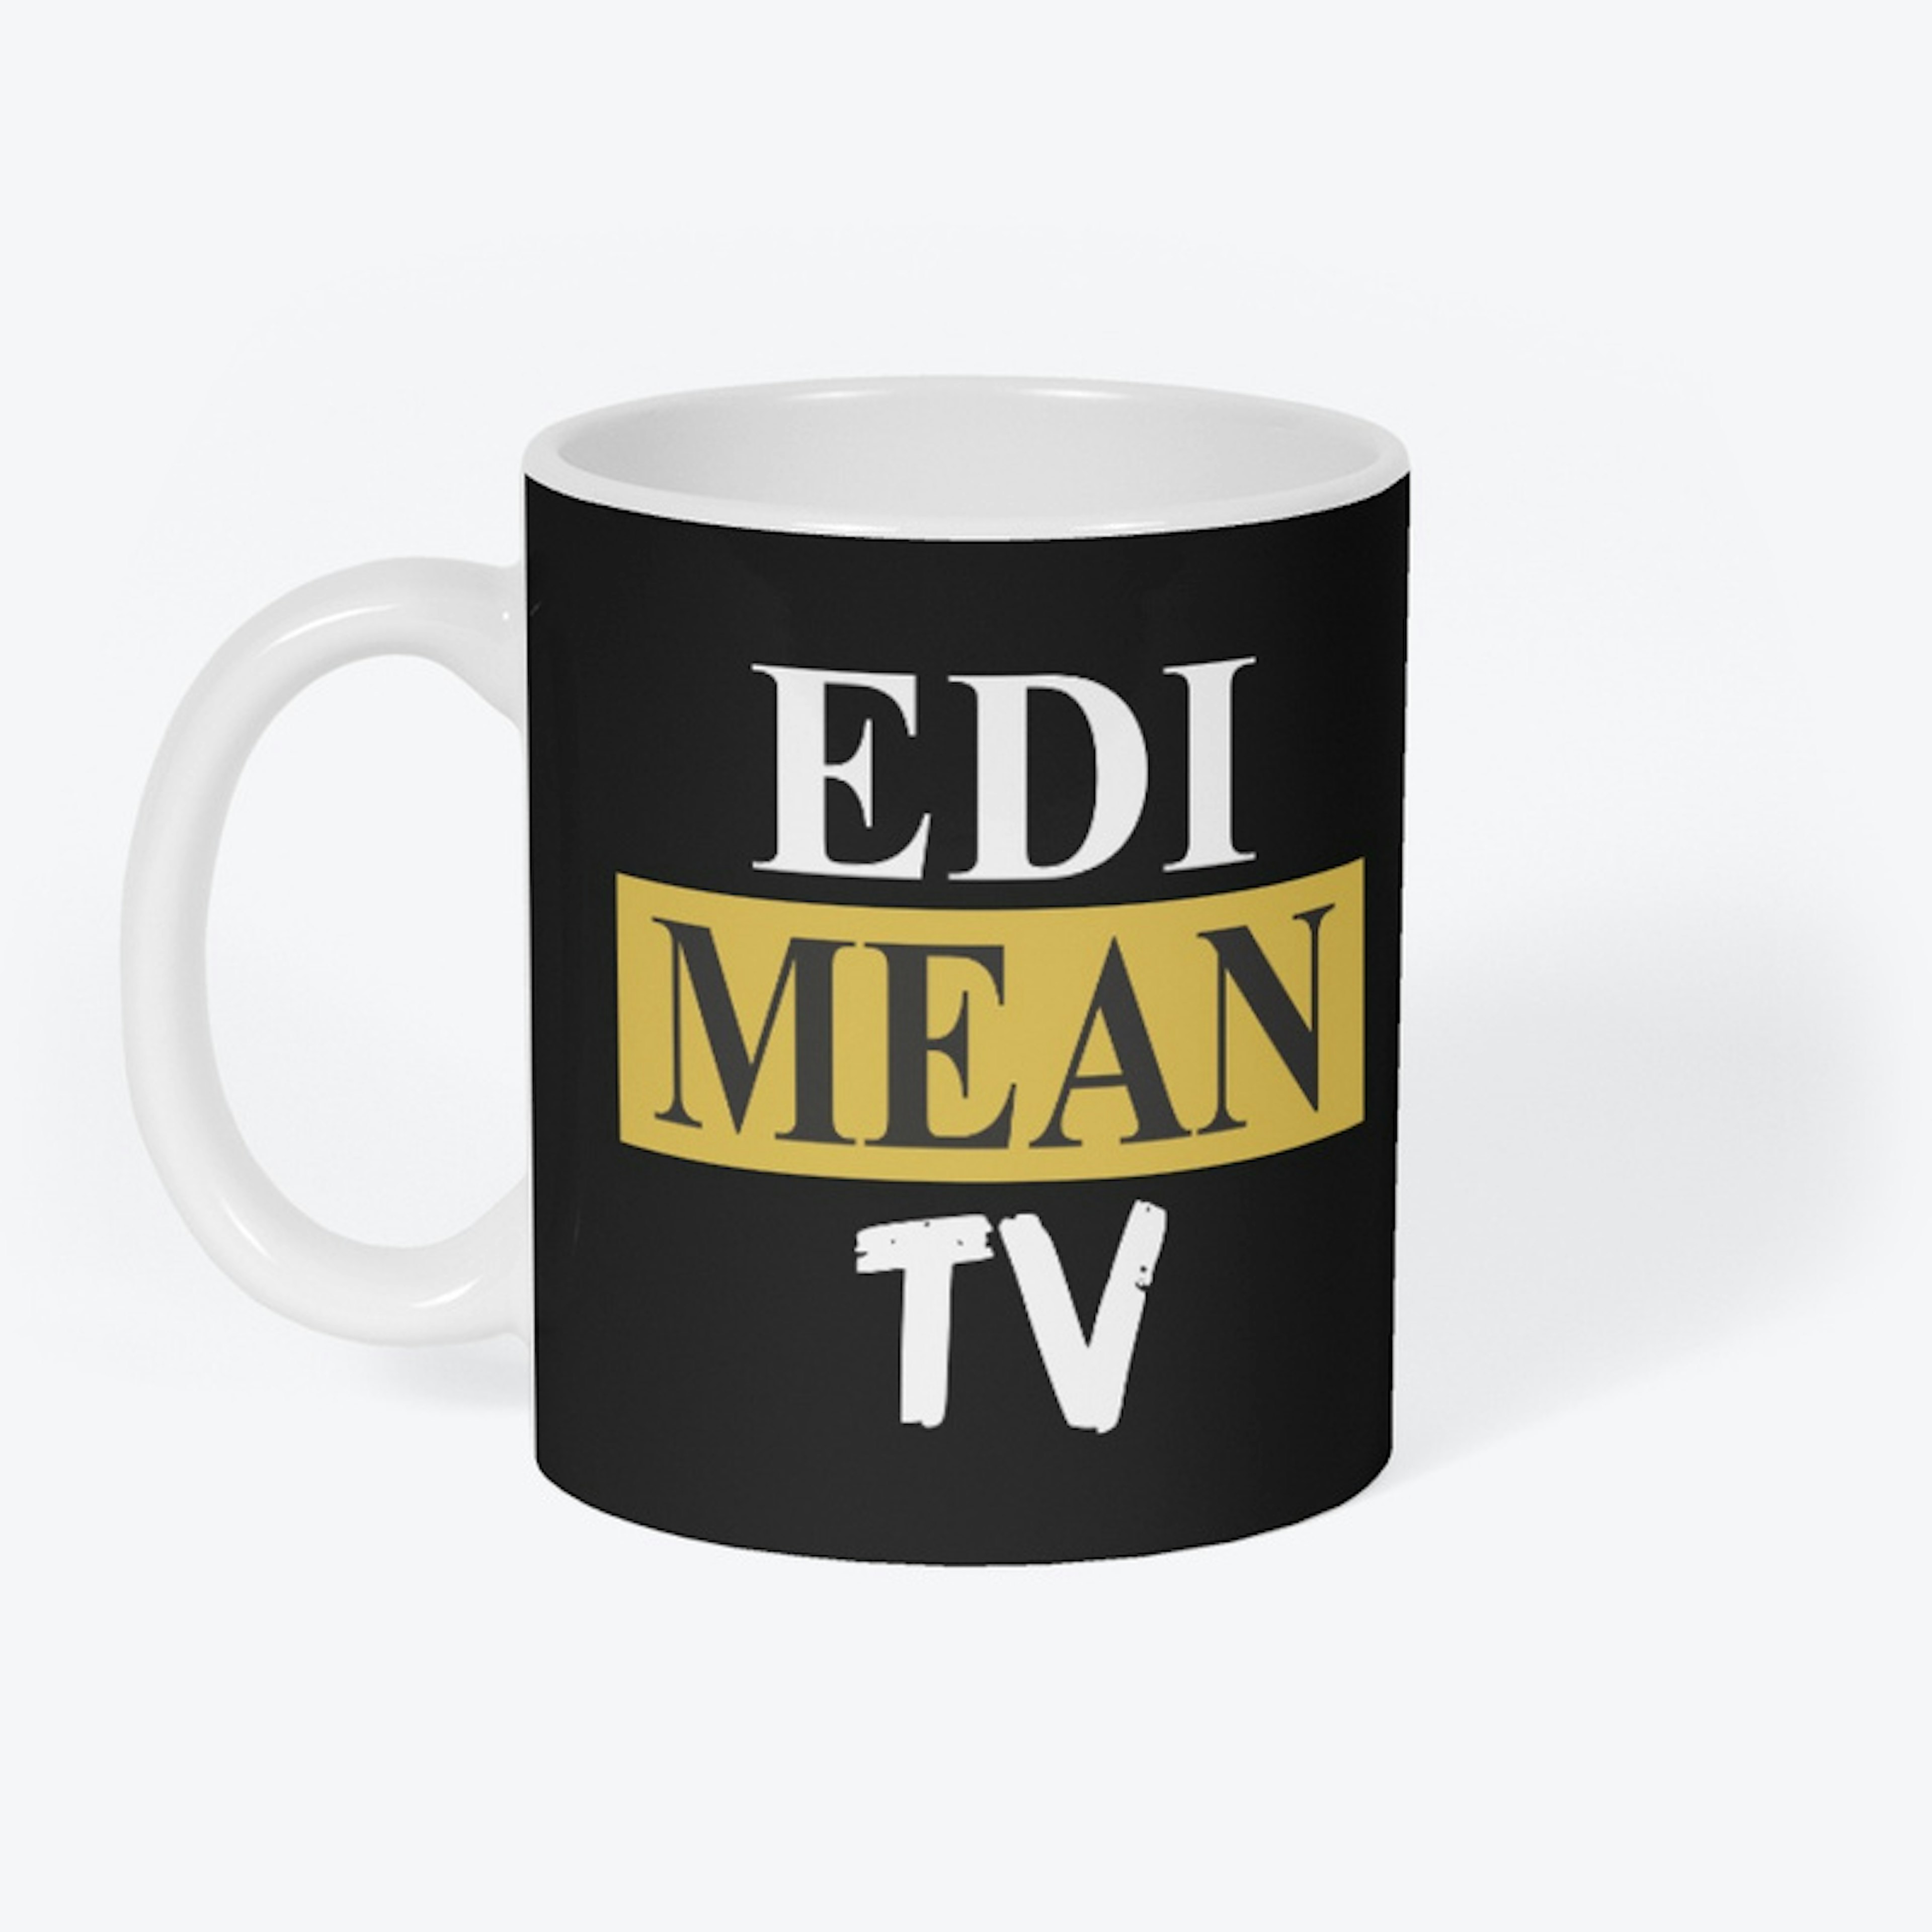 EDI MEAN TV Signature